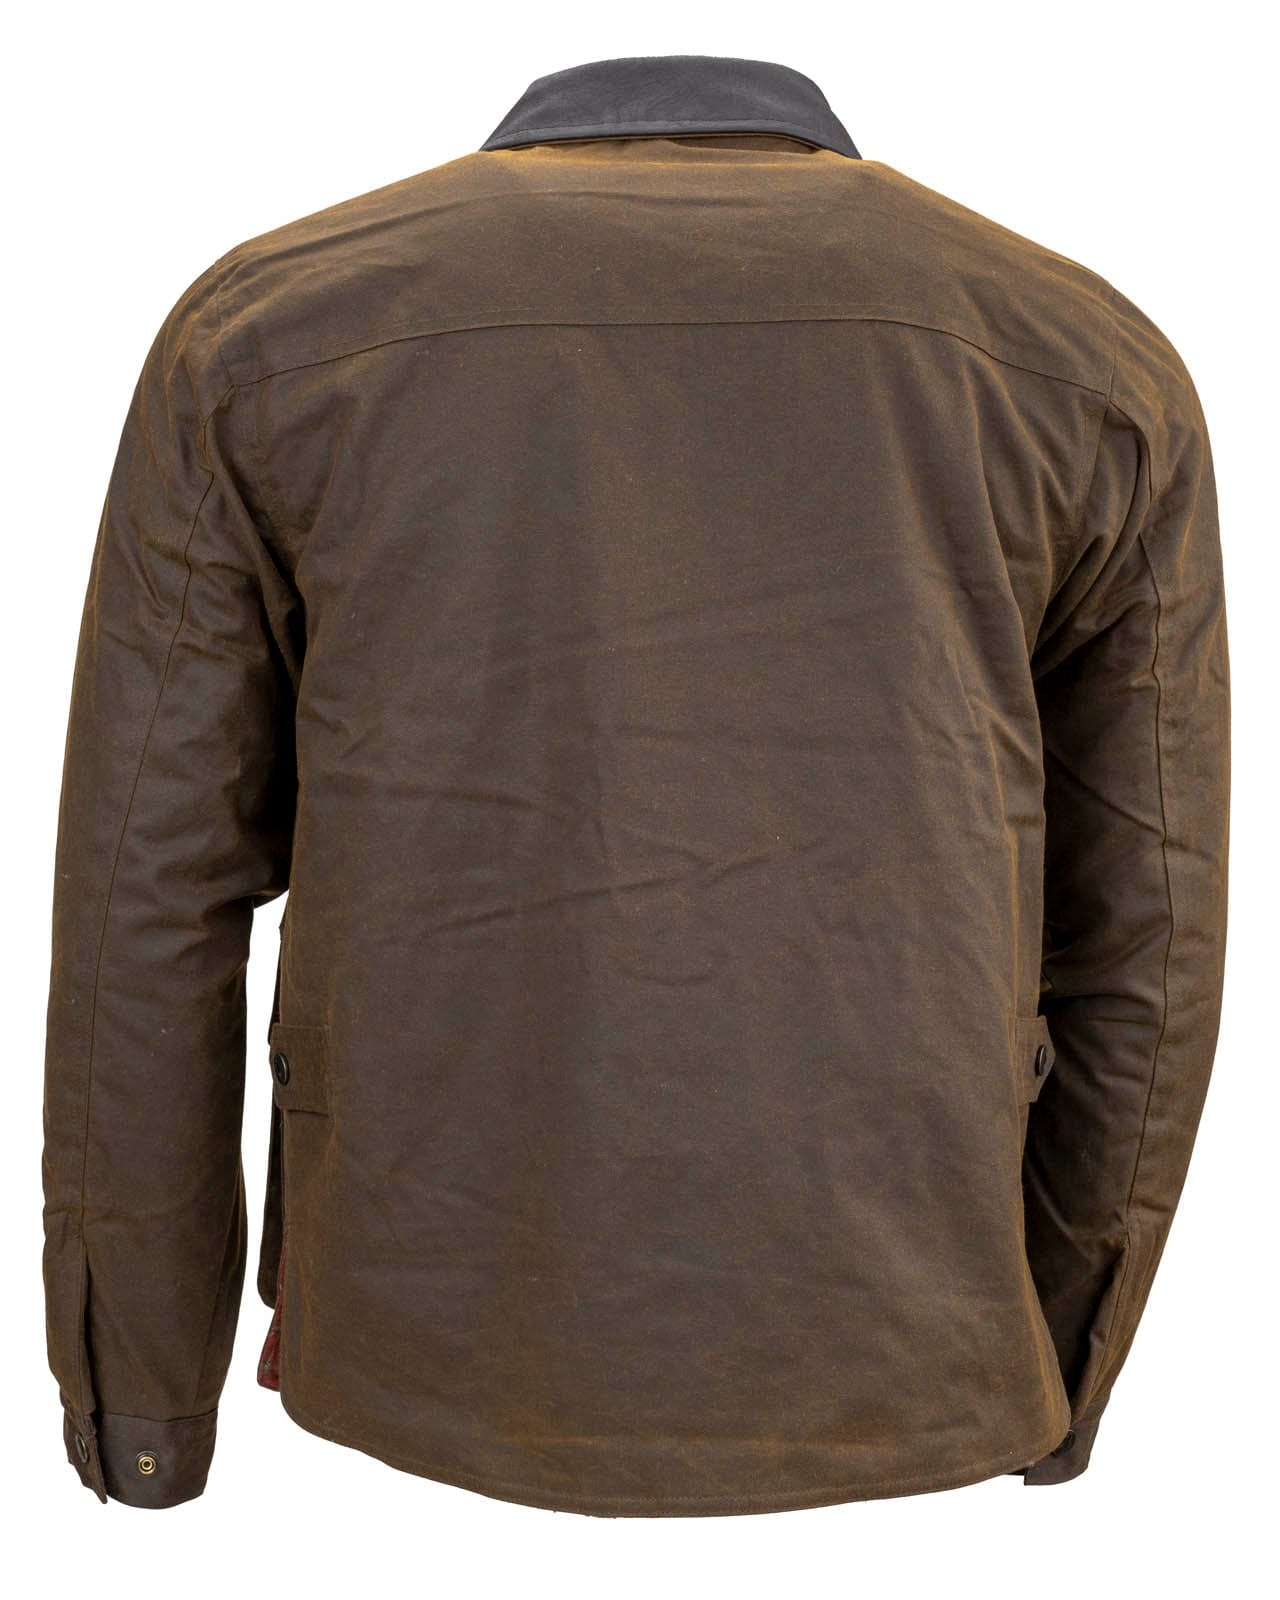 Men’s Overlander Jacket | Vests by Outback Trading Company ...